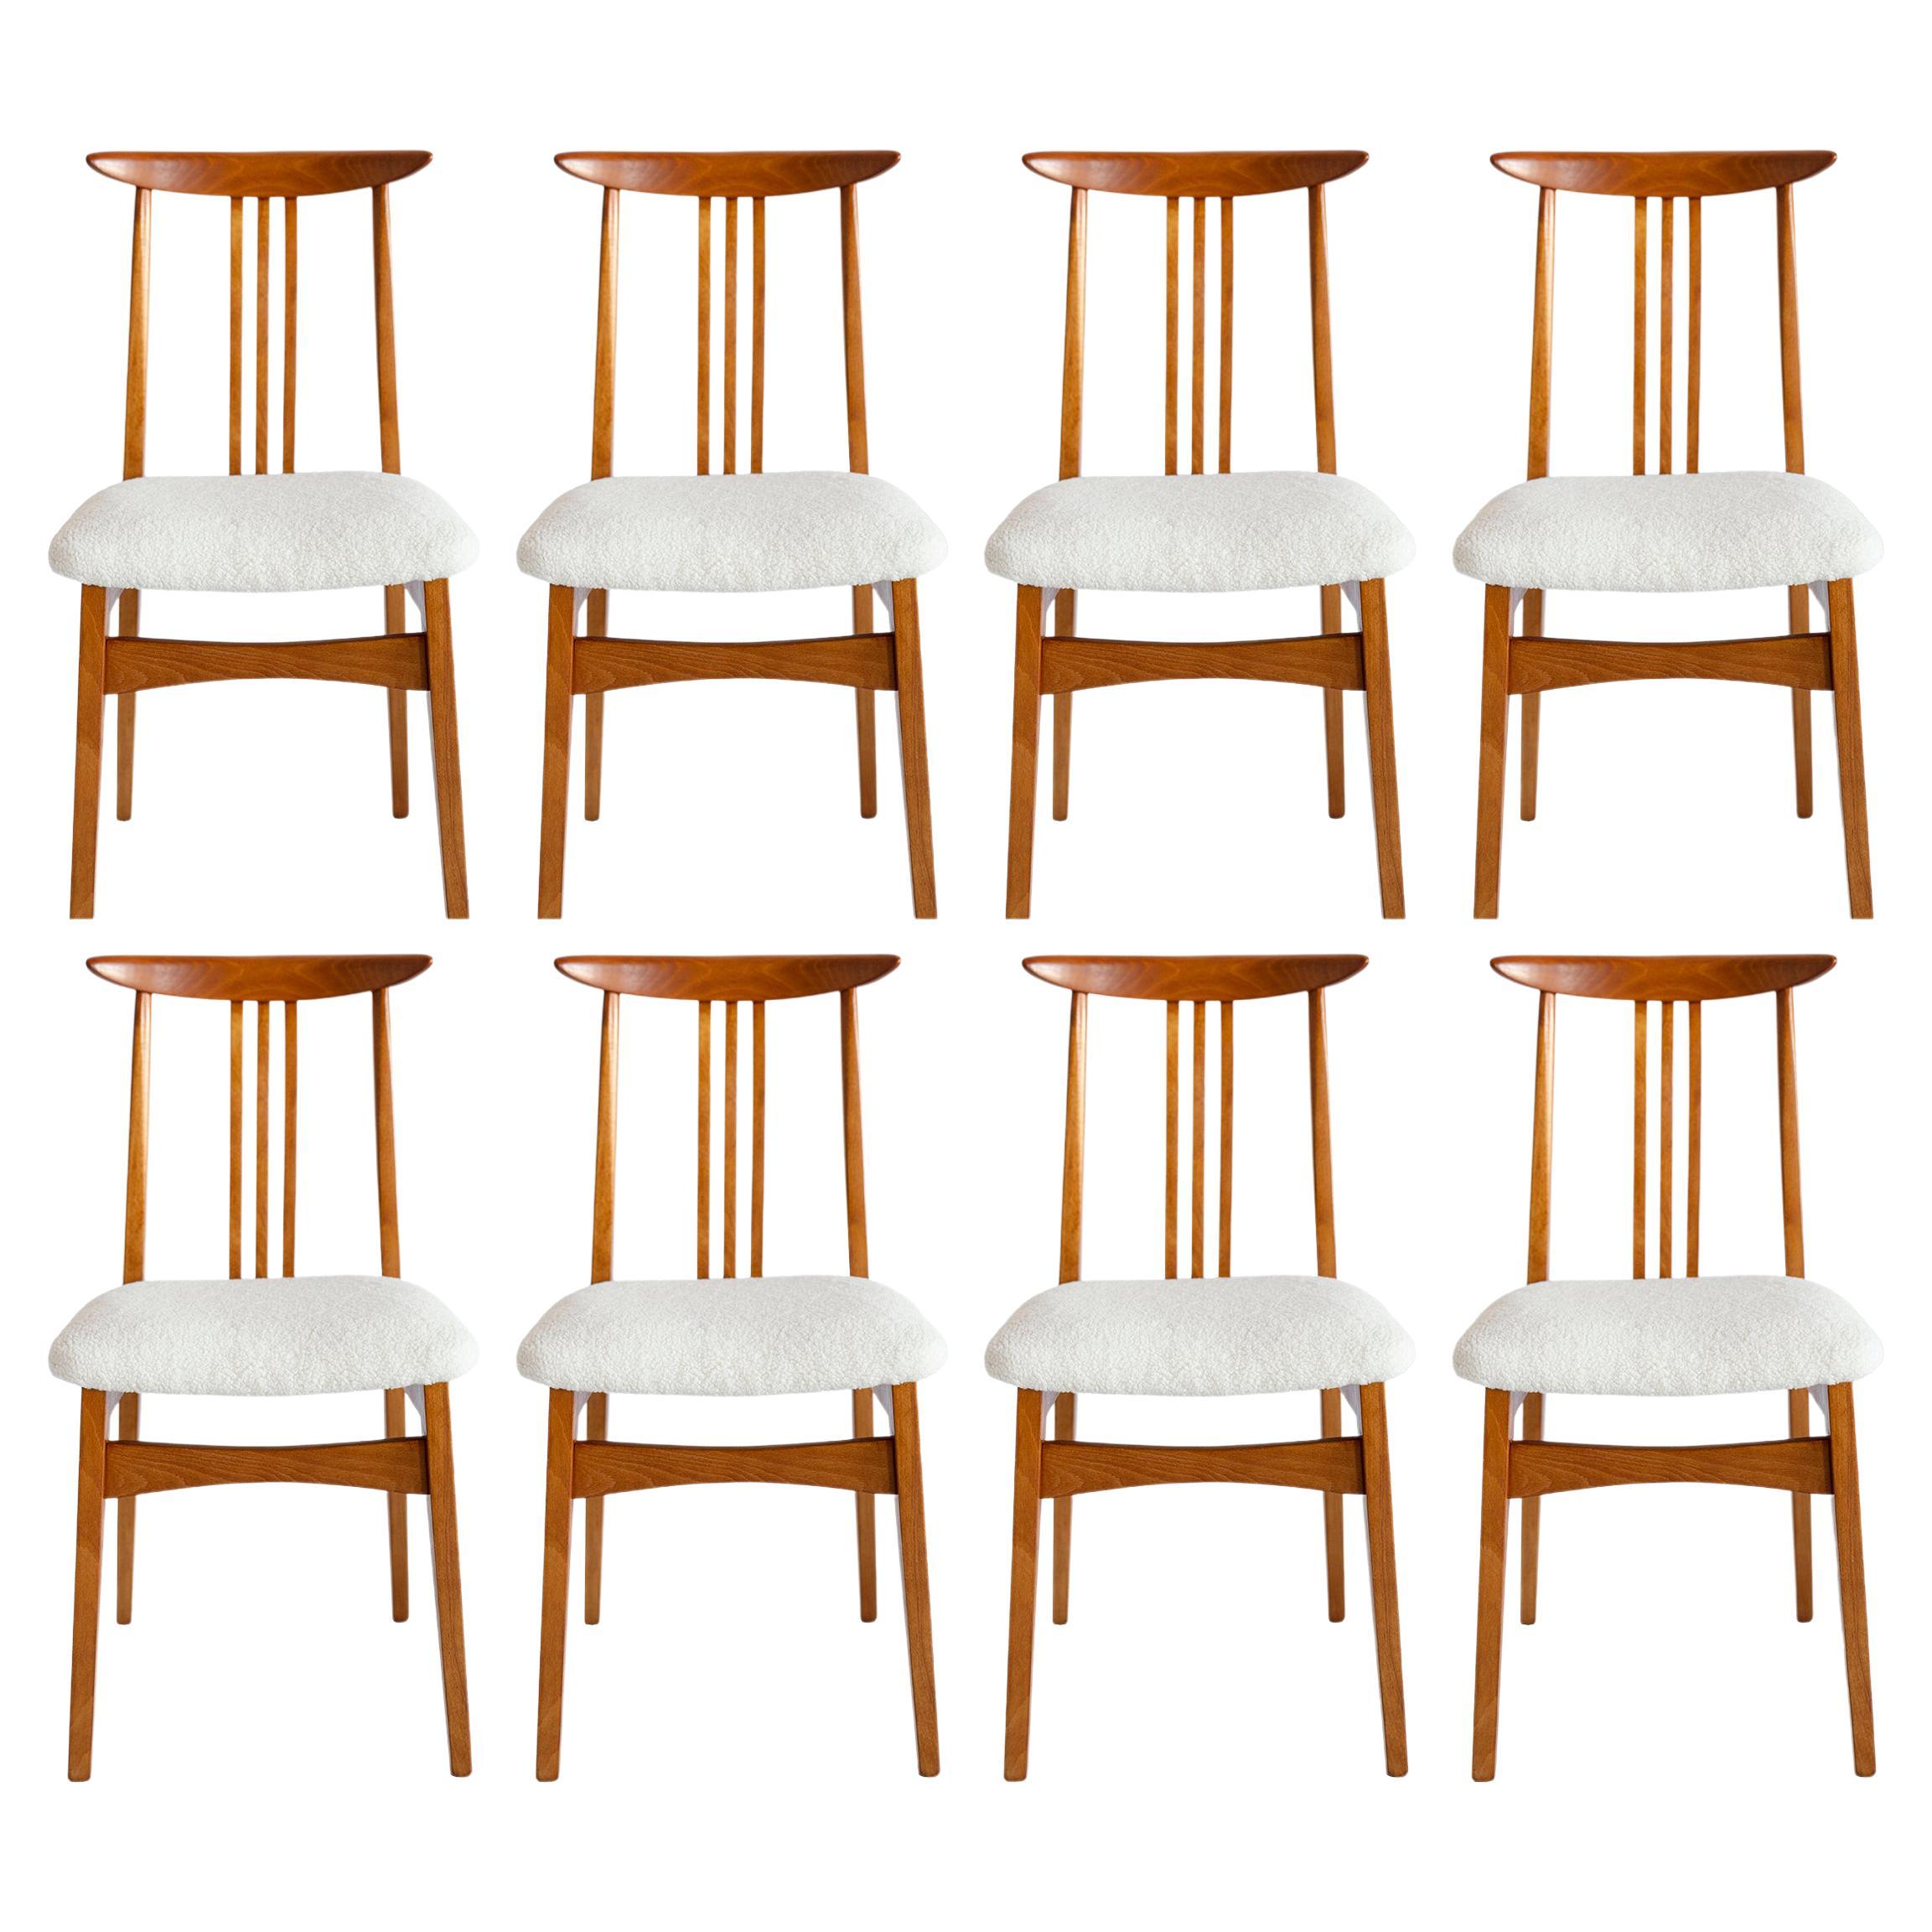 Huit chaises lumineuses en bouclette du milieu du siècle dernier, conçues par M. Zielinski, Europe, années 1960